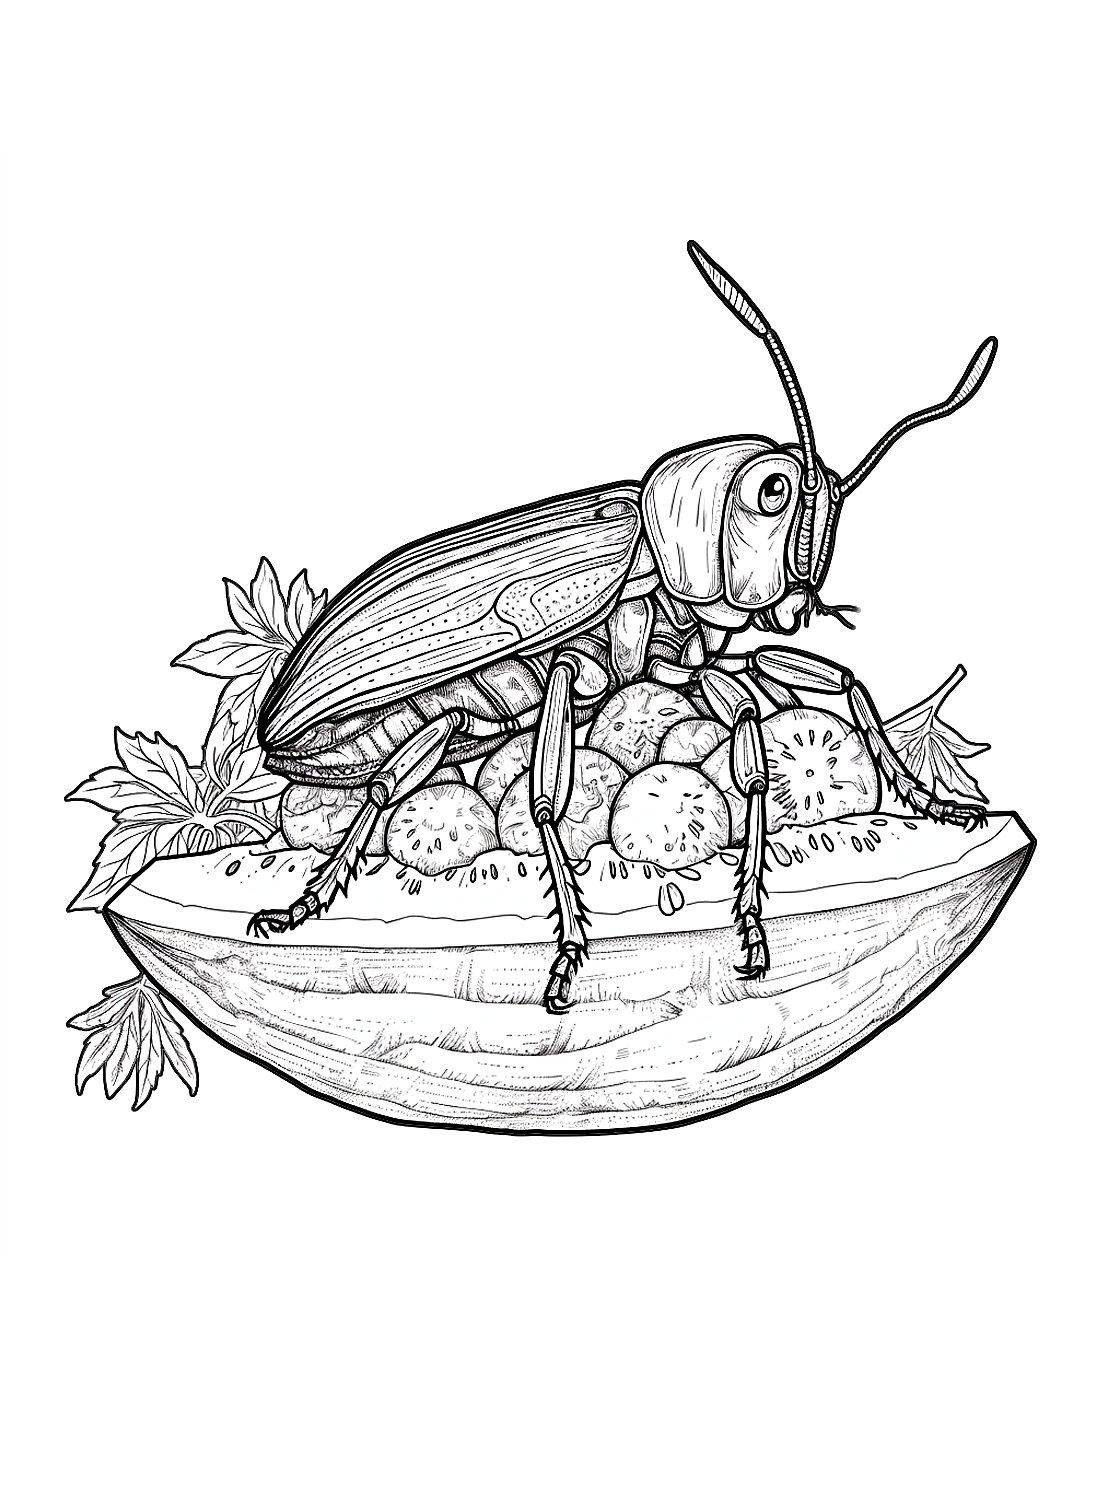 Lo scarafaggio e i frutti dello scarafaggio